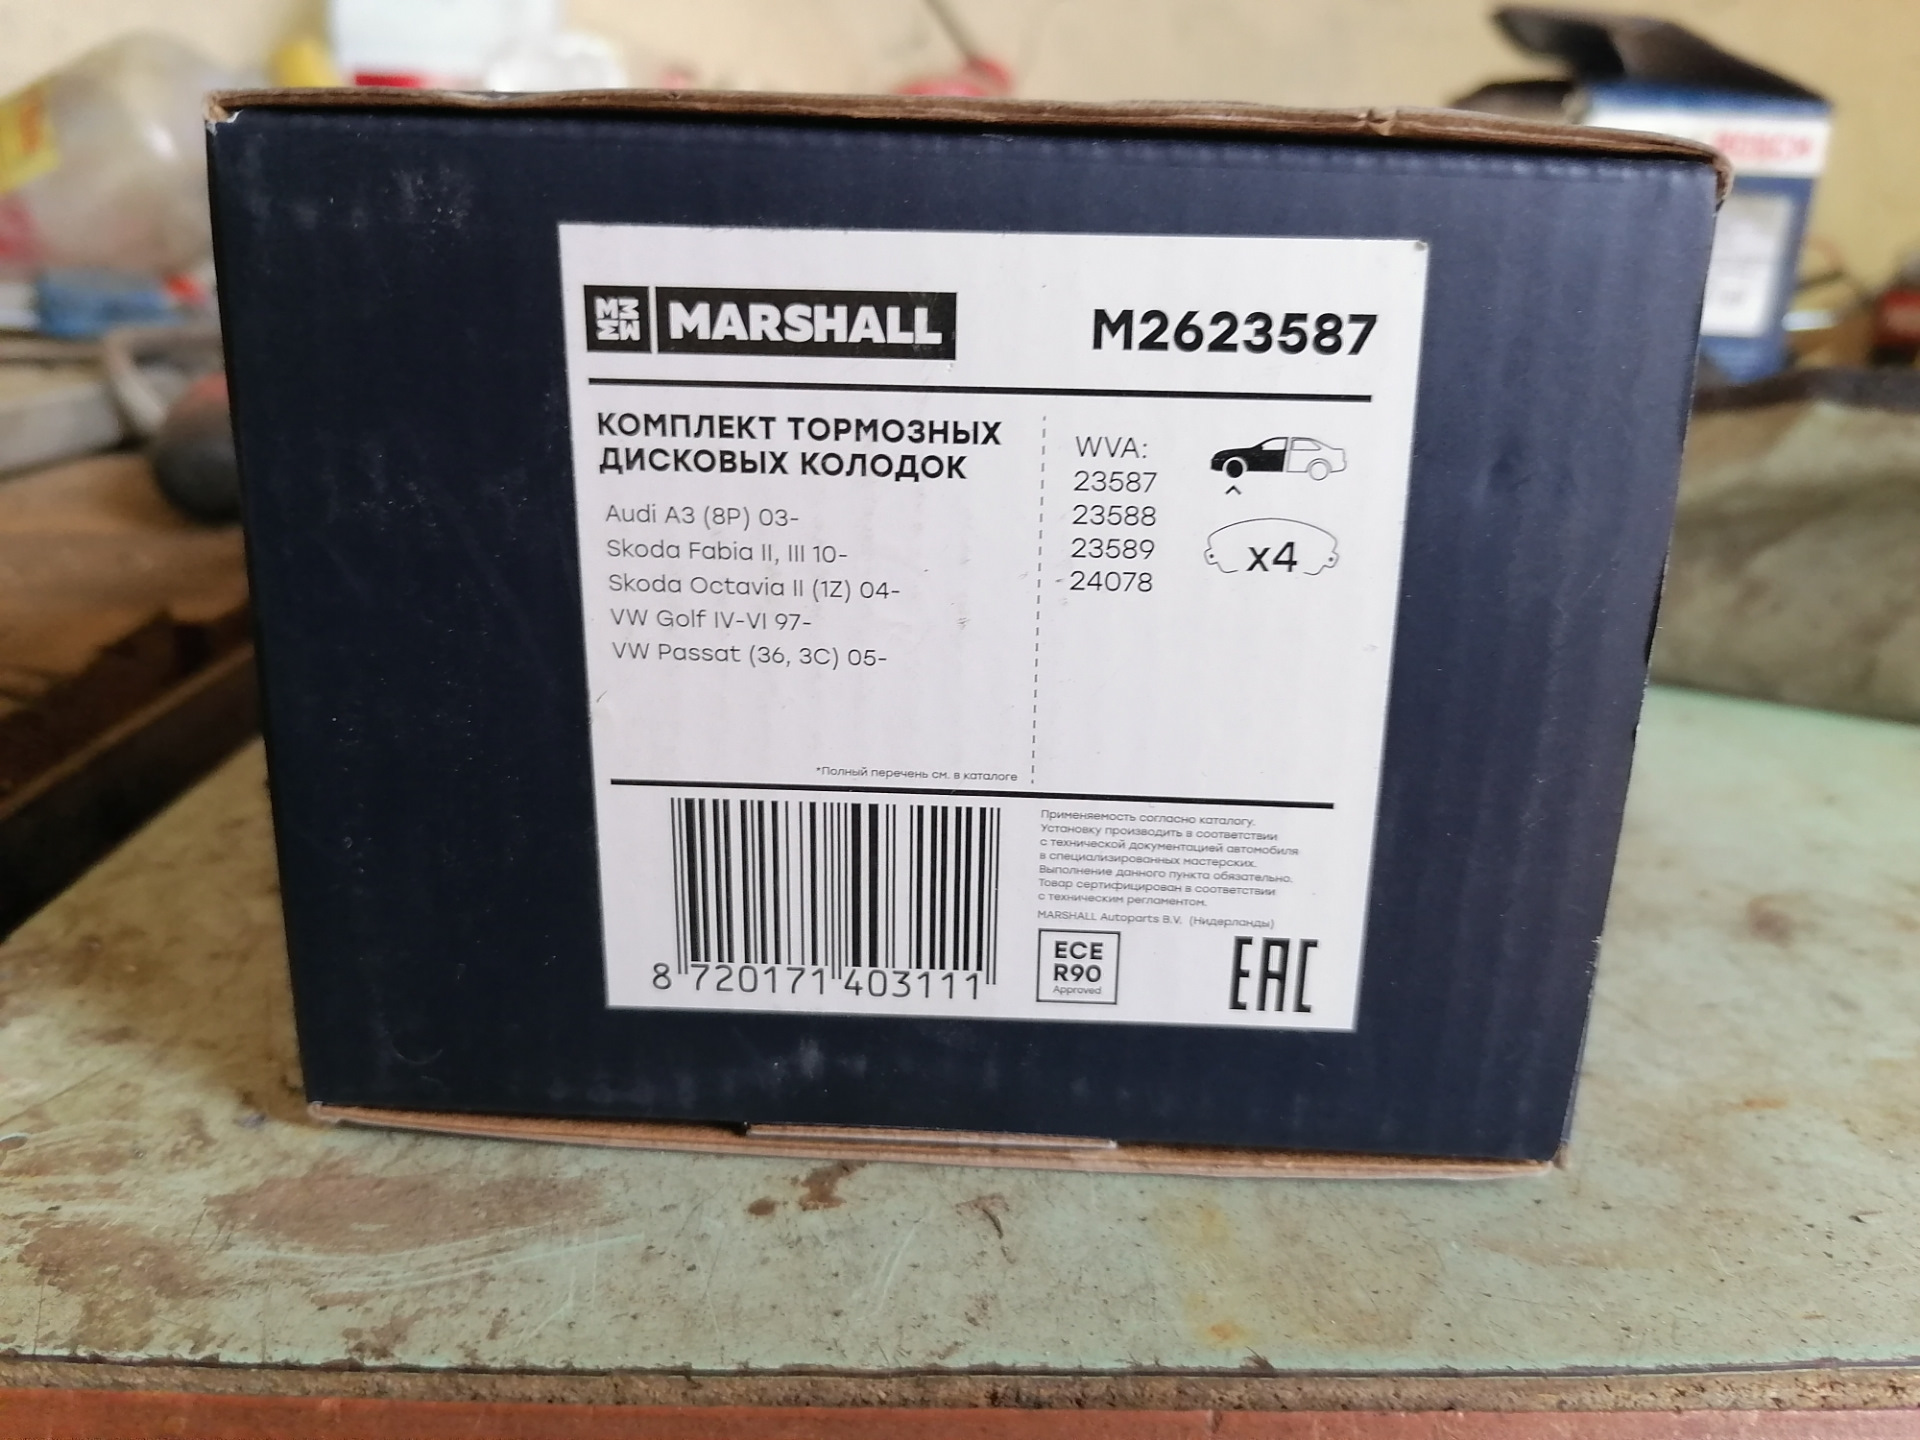 Колодки Маршал m2623587. M2623587 Marshall тормозные совместимость. M2623587. Marshall запчасти. Фирма маршал производитель